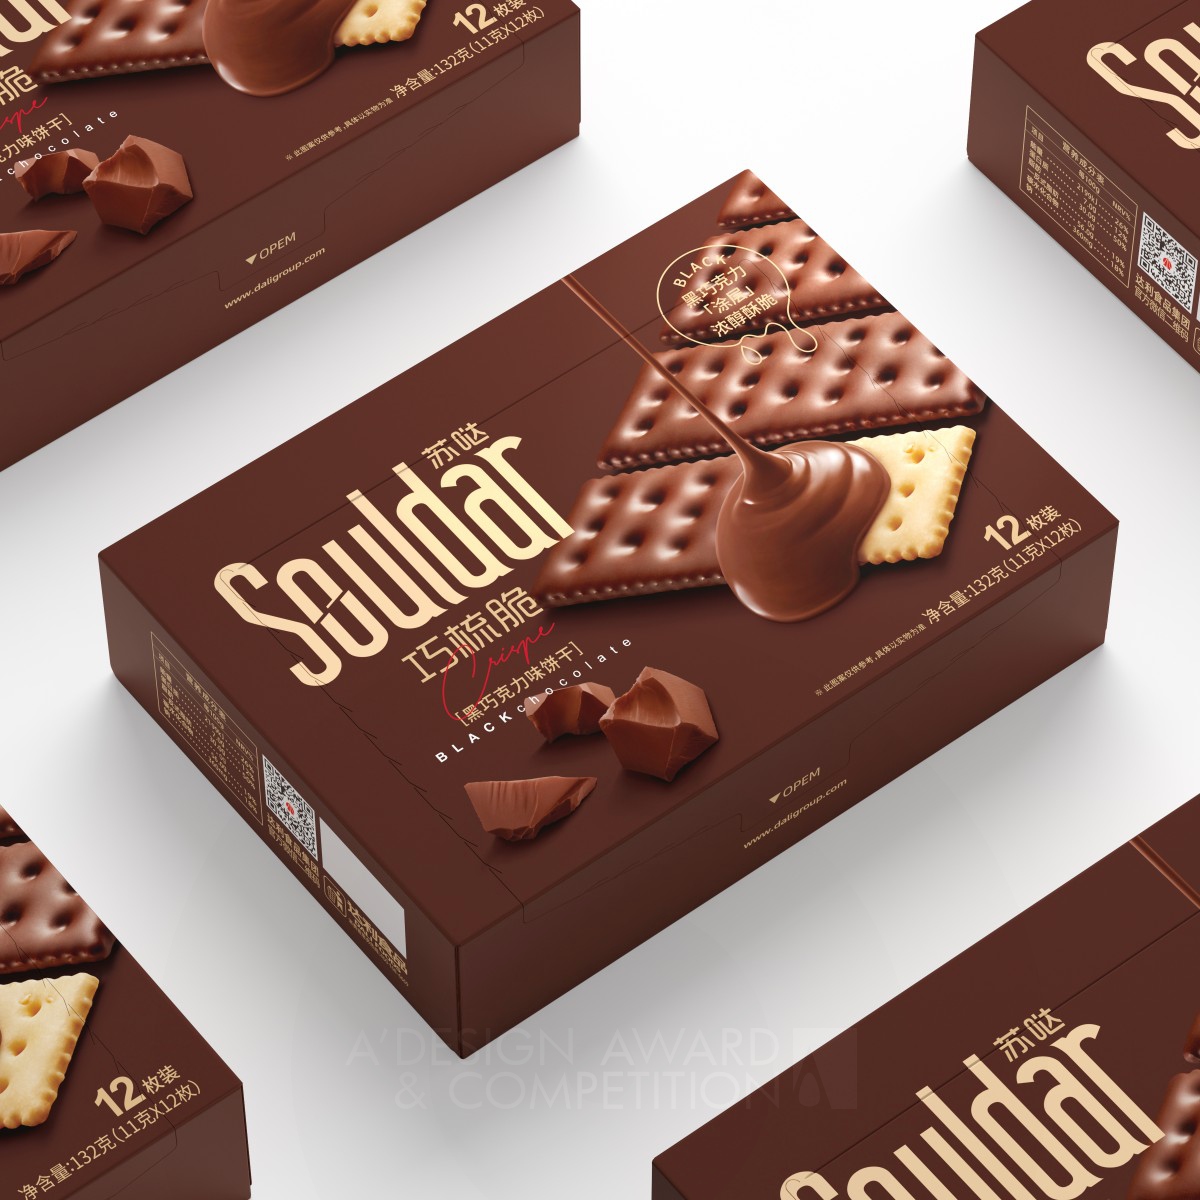 Souldar Cracker